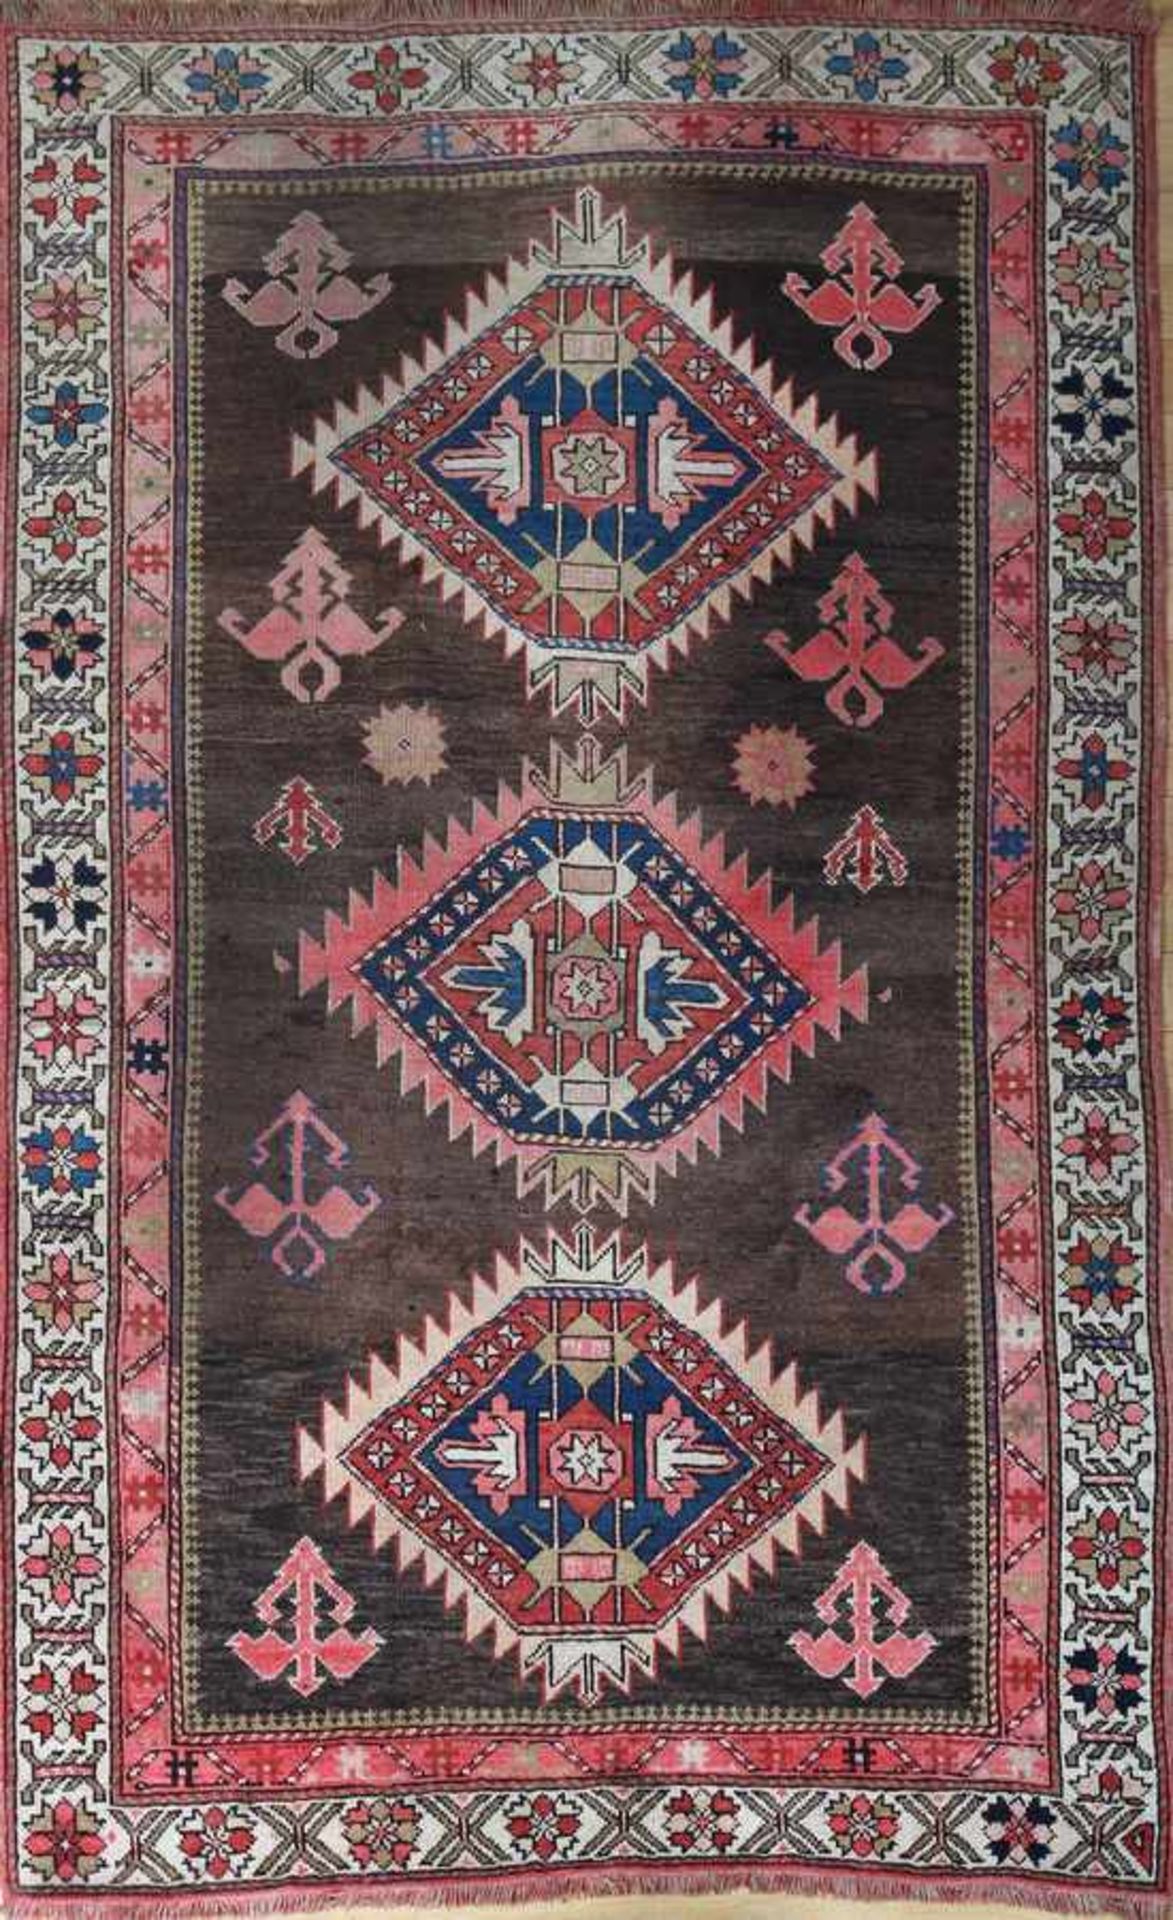 Teppich, Shirvan antik, um 1900, 168x105cm, braungrundiges Zentralfeld mit 3 rautenförmigen